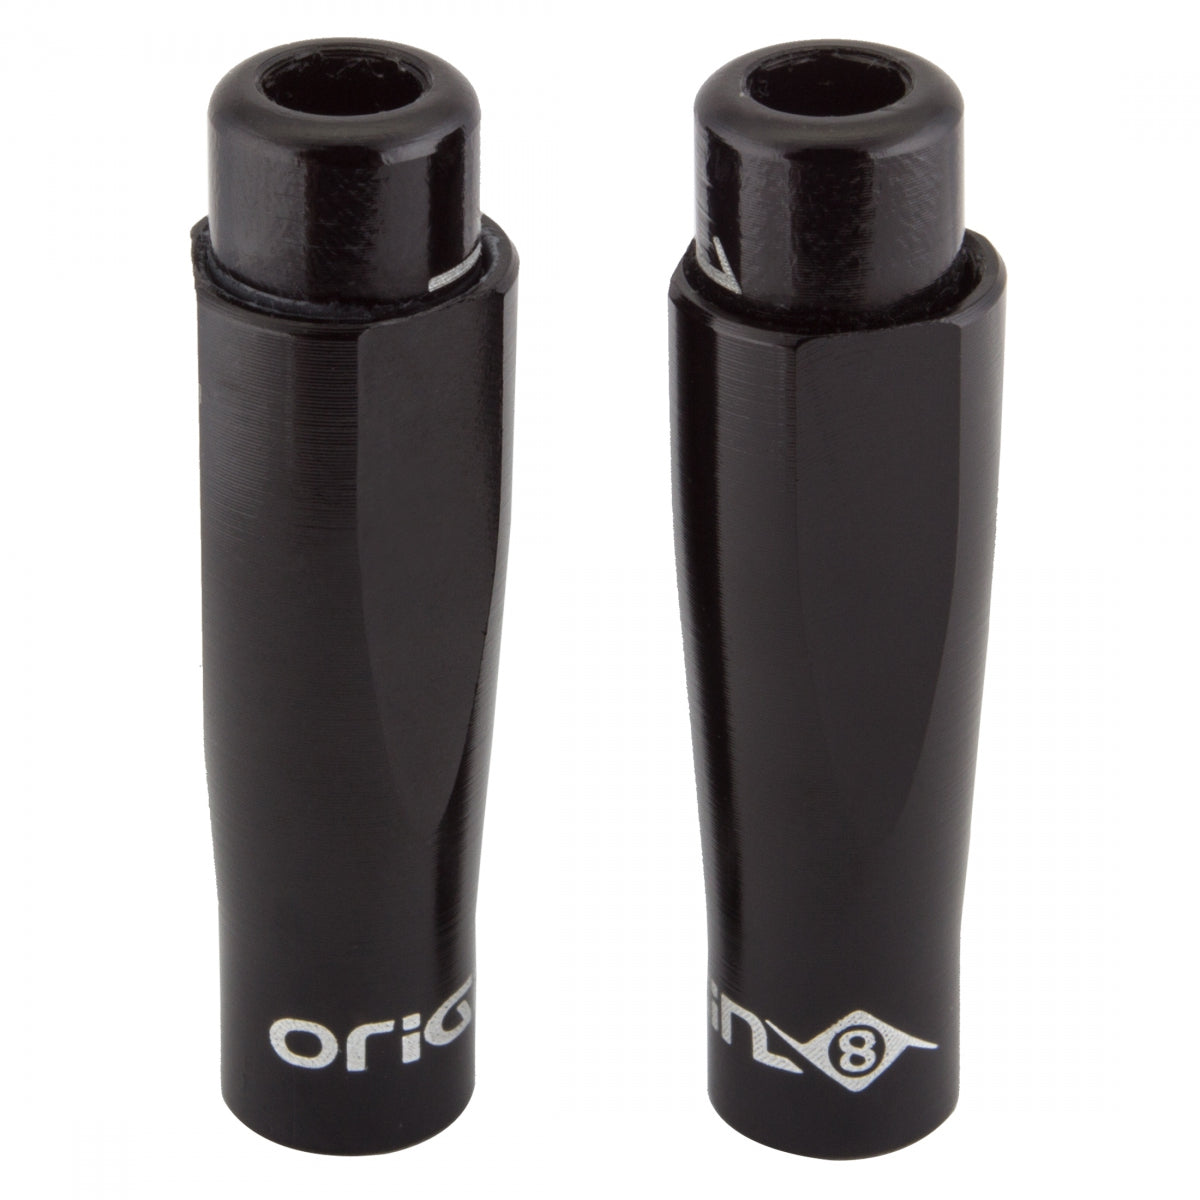 Origin8 5mm In-Line Barrel Adjuster Kit, Black, Pair